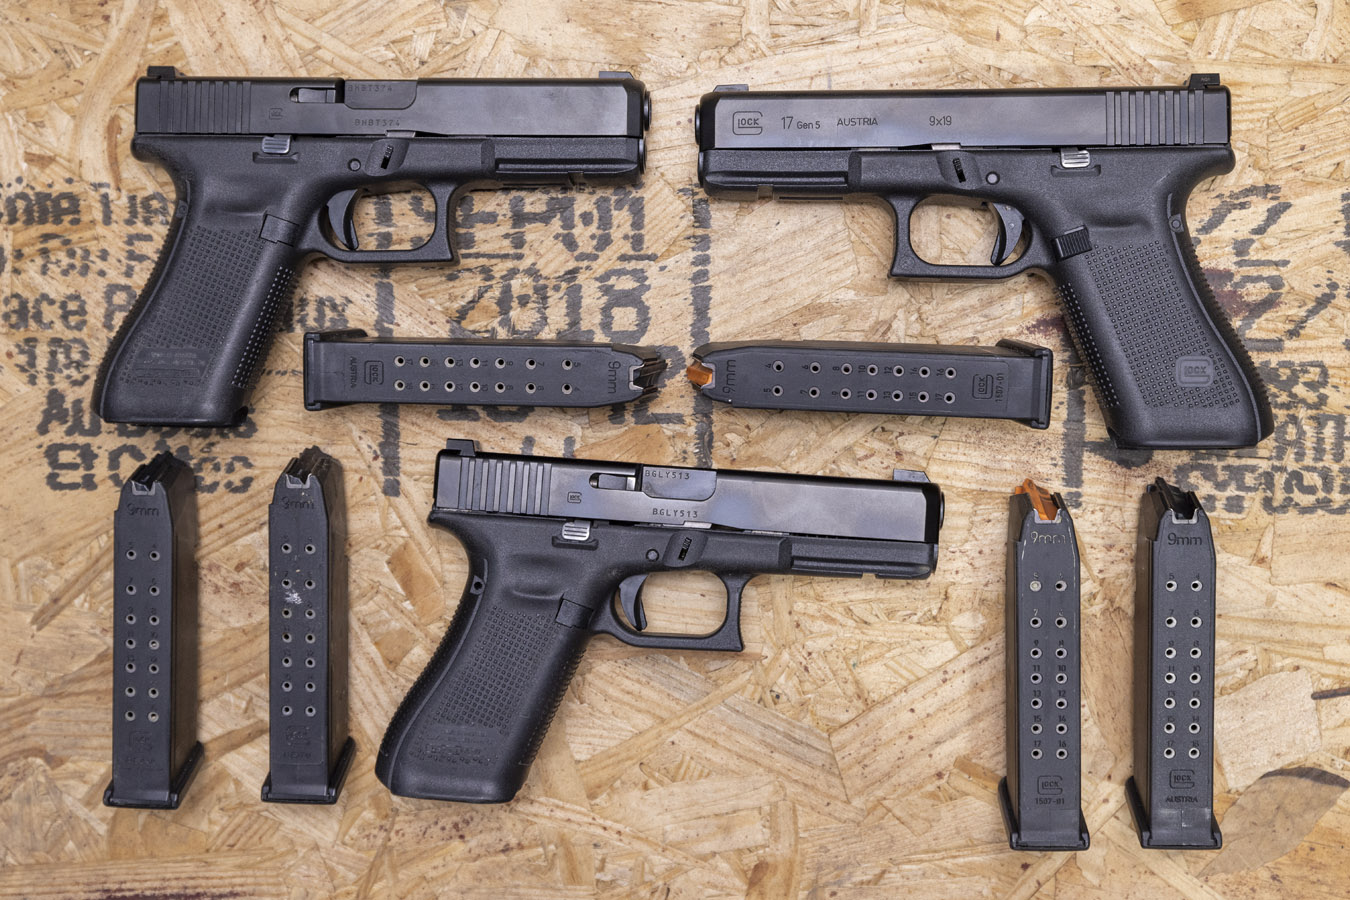 Gun Review: Glock G17 Gen 5 Handgun 